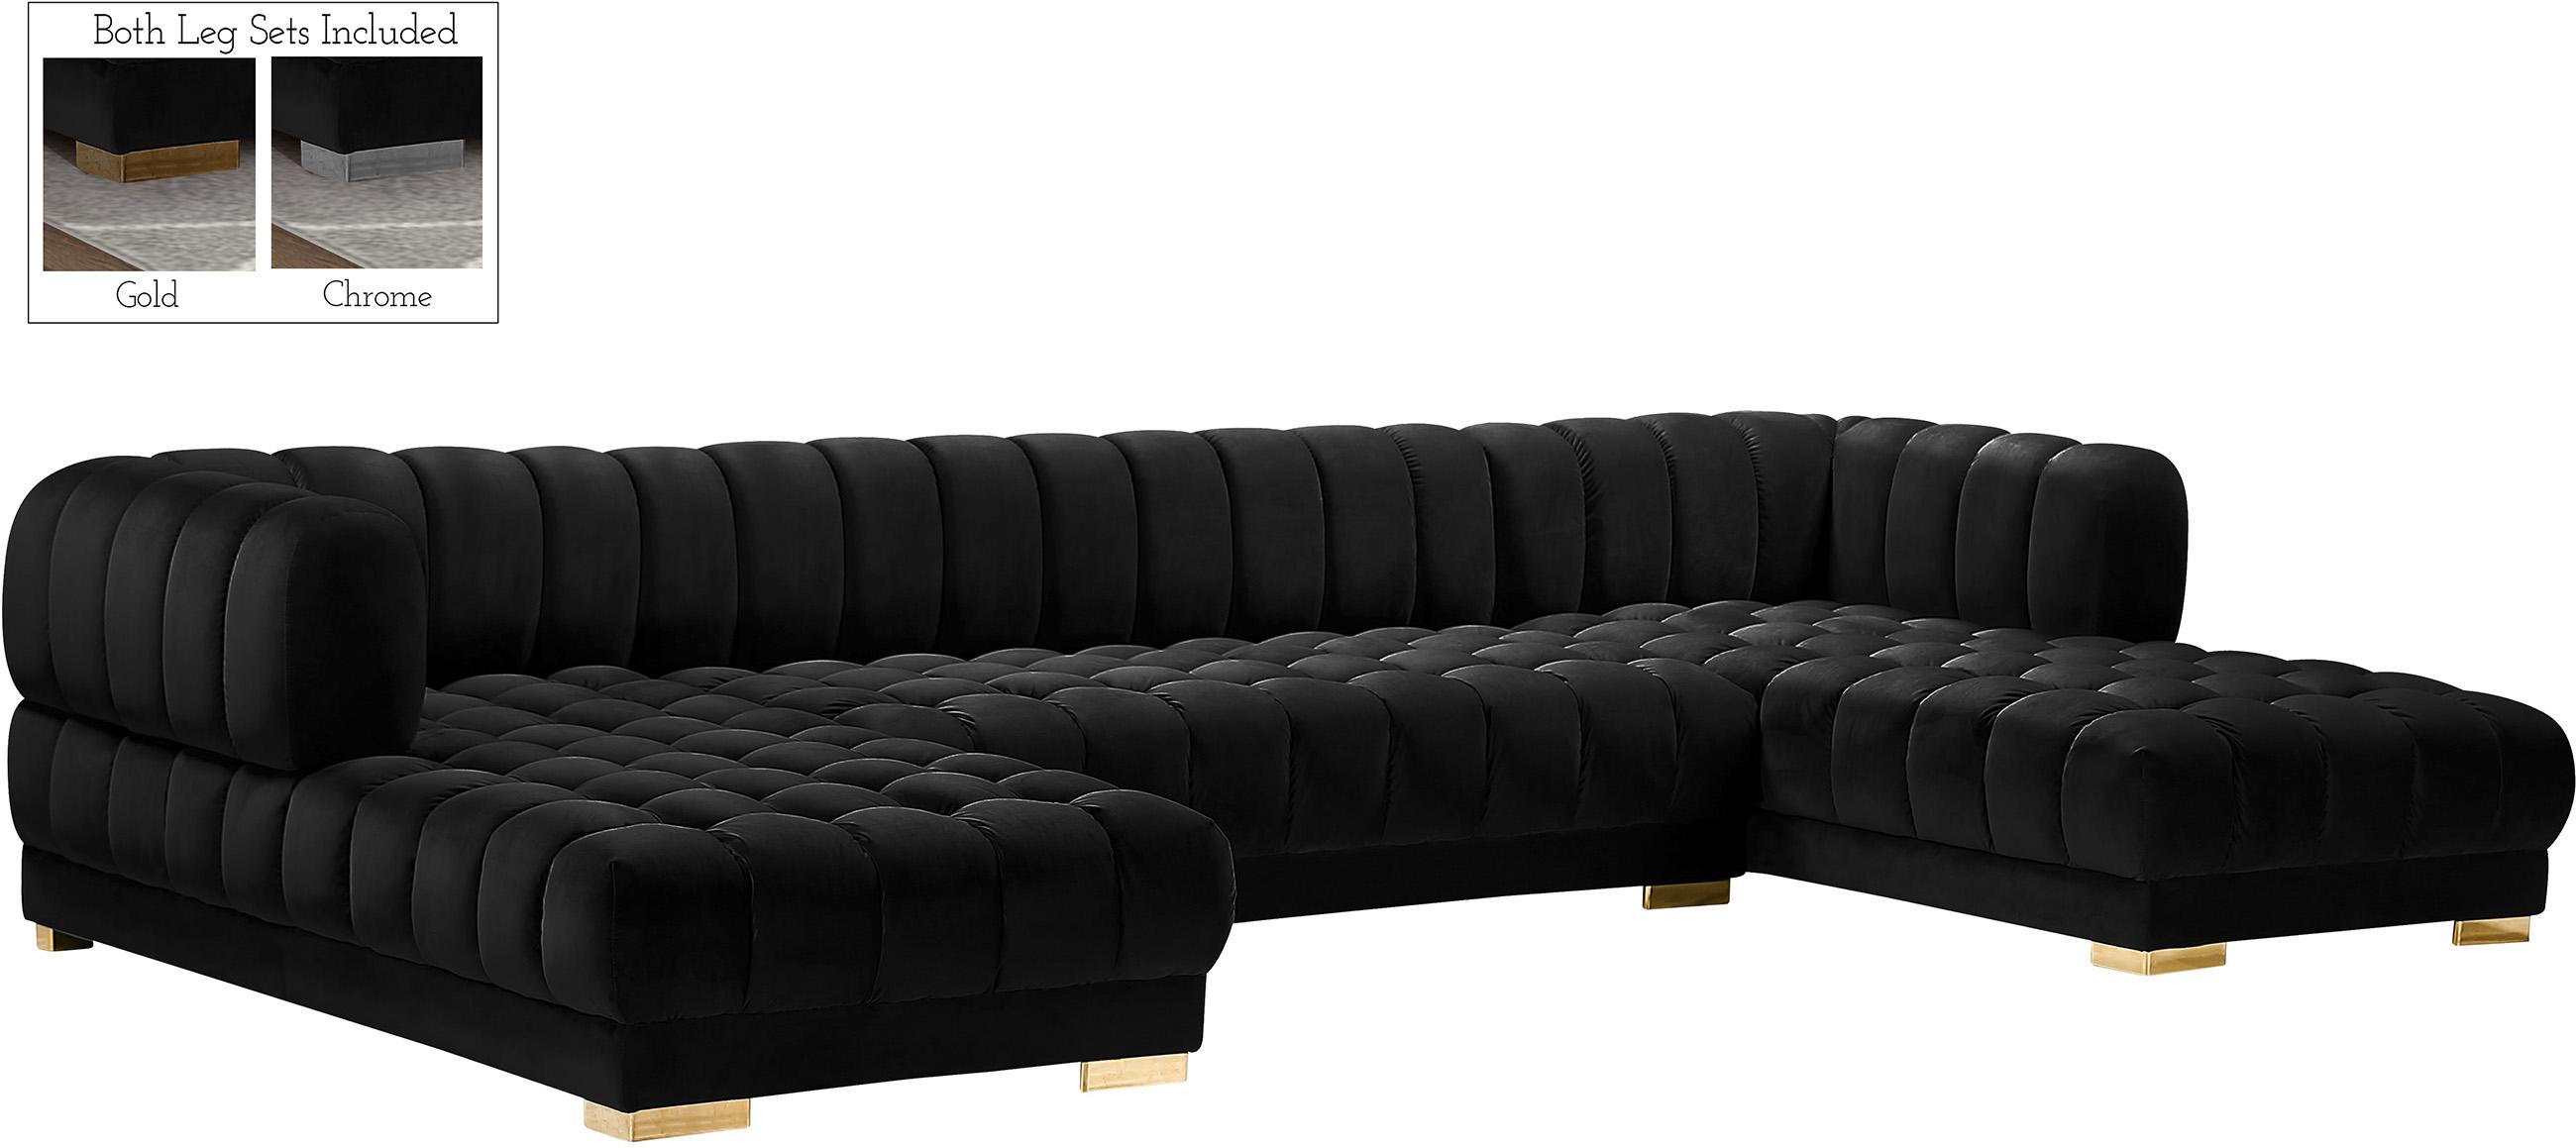 Contemporary, Modern Sectional Sofa GWEN 653Black 653Black-Sectional in Black Velvet